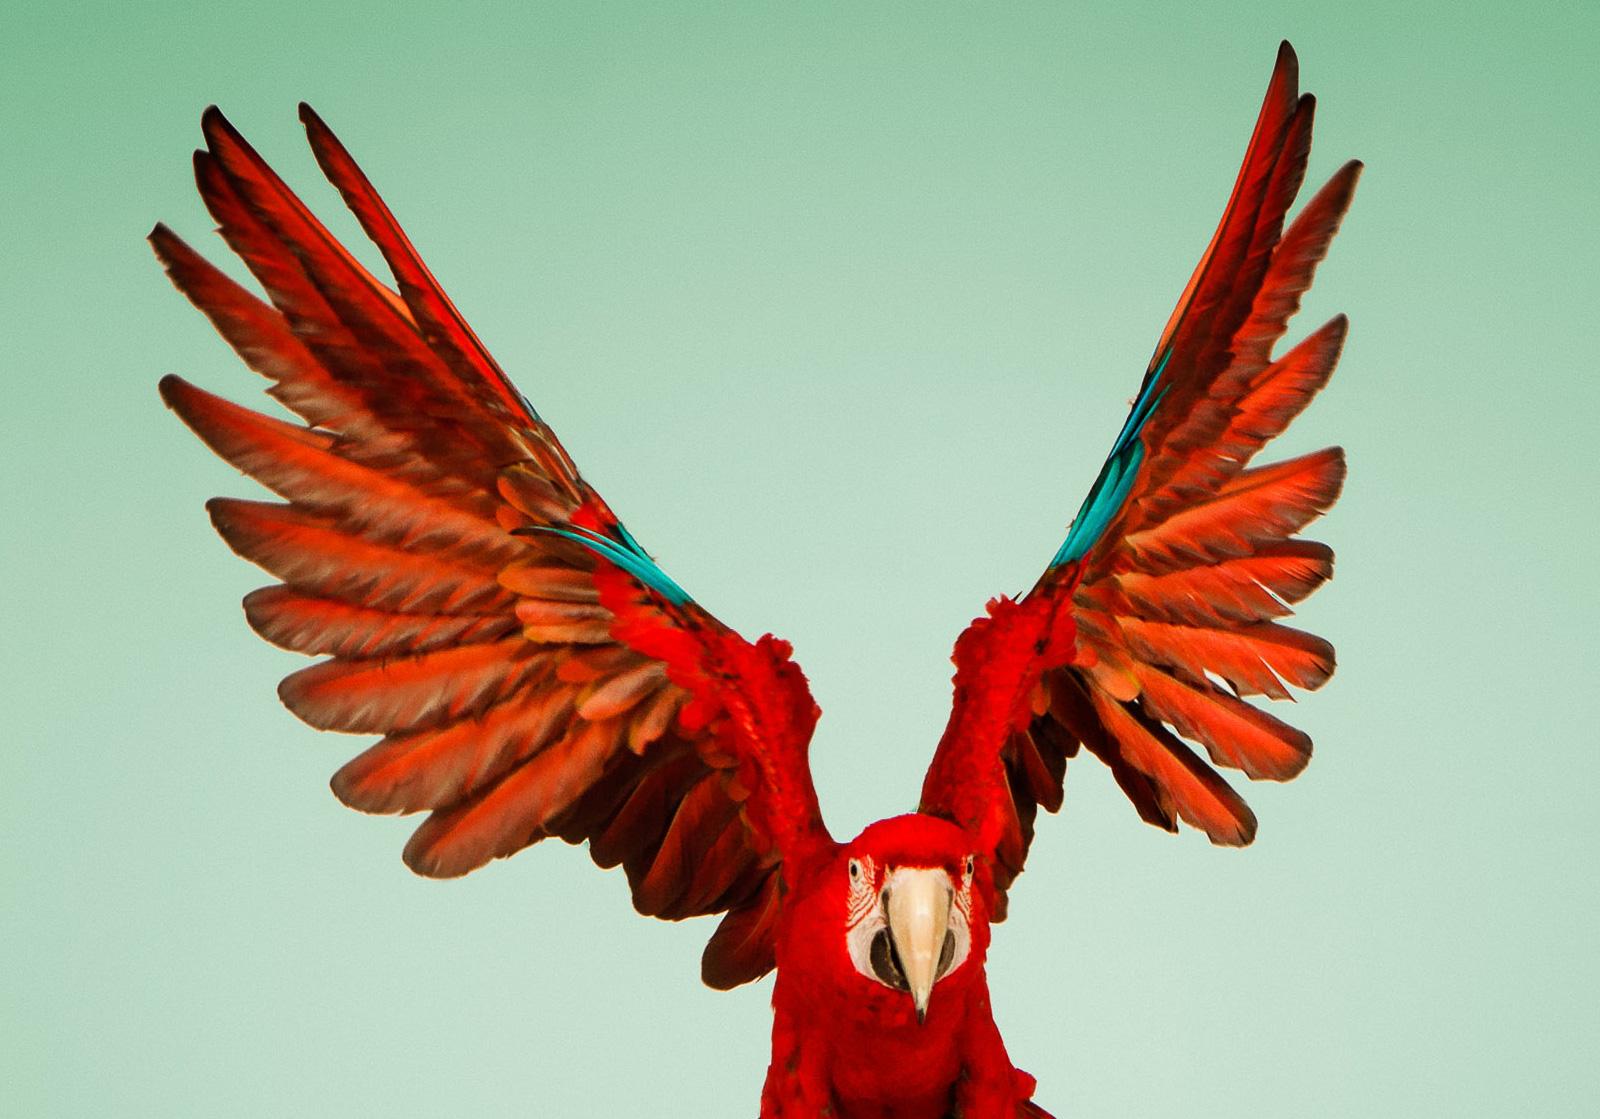  Macaw #6 - Impression oiseau d'art contemporain en édition limitée signée, vert - Photograph de Tim Platt